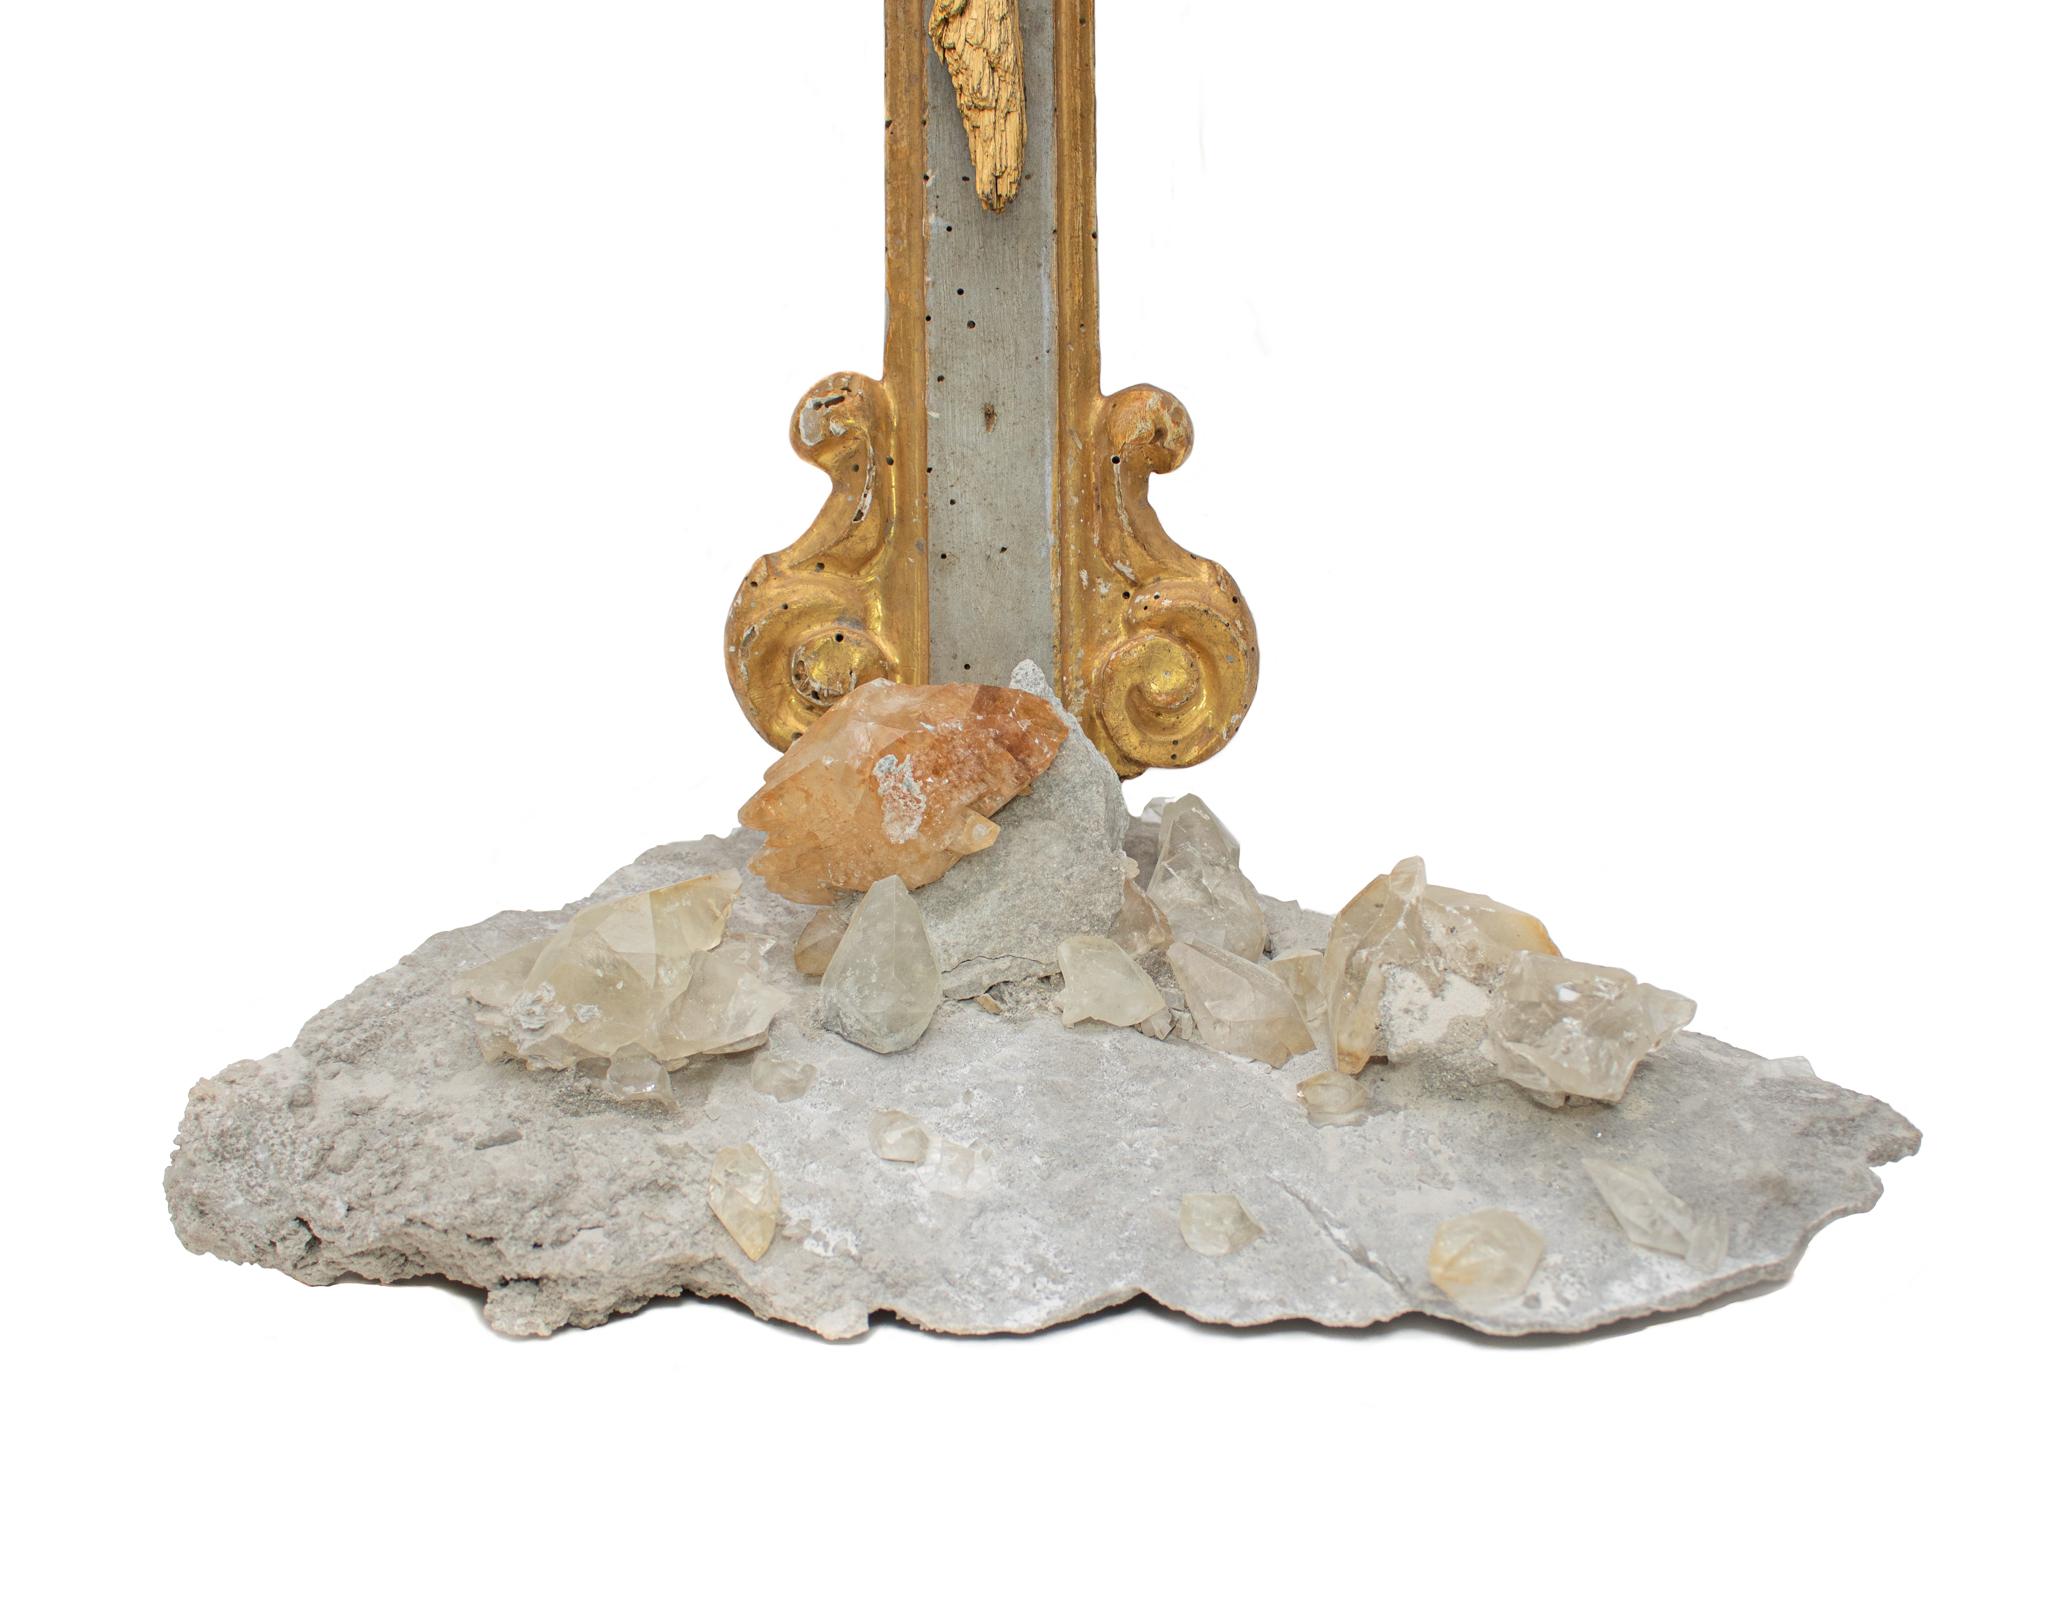 Crucifix italien du XVIIIe siècle avec du disthène plaqué or, des cristaux de calcite dans la matrice et des perles baroques. Le crucifix provient d'une église de Ligurie. Il est sculpté à la main et peint avec des pigments gris. Le soleil et les